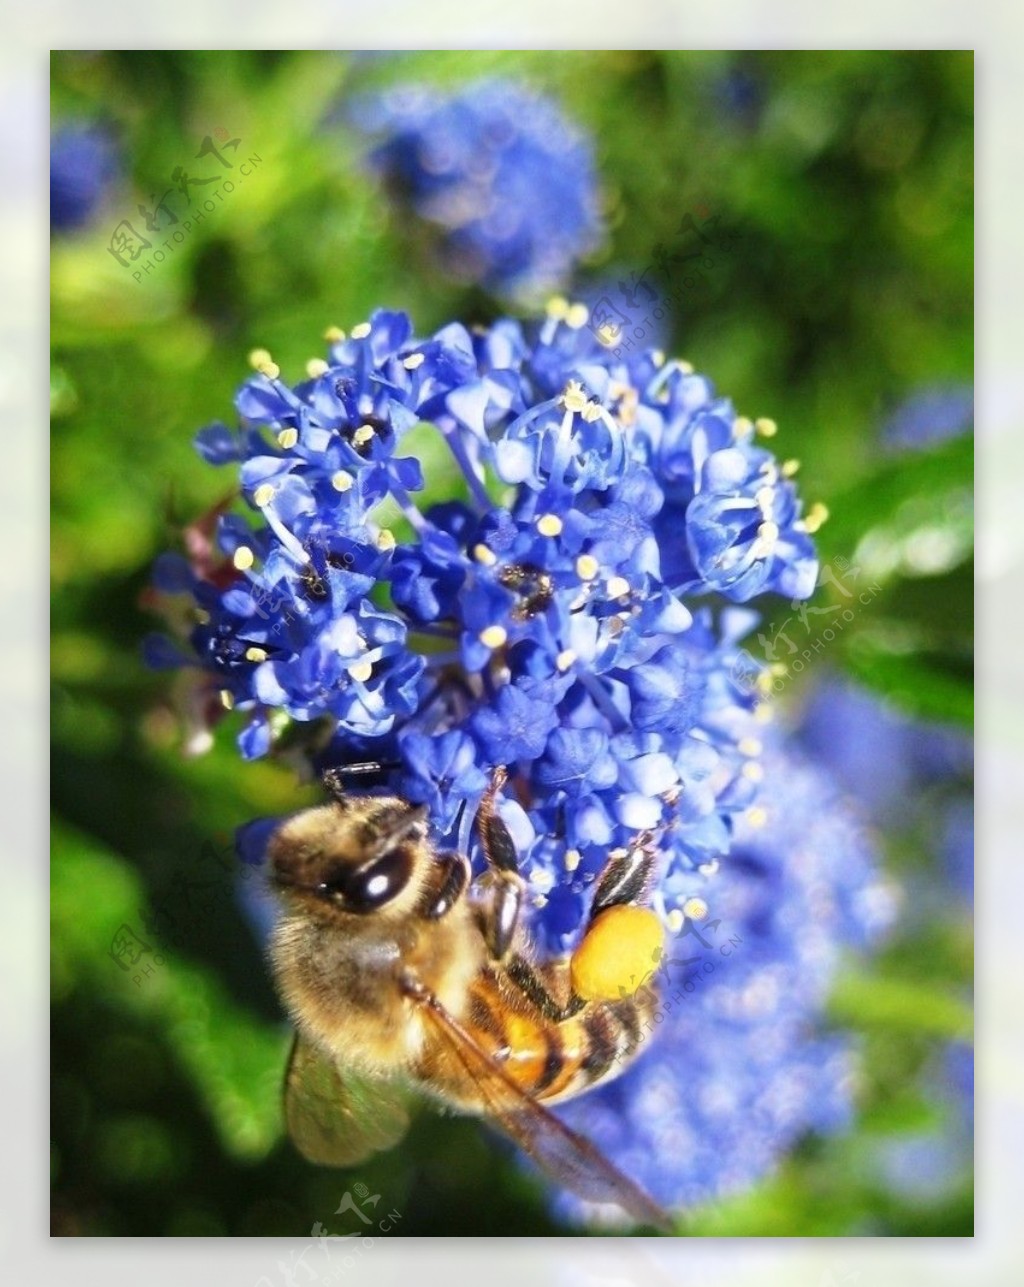 壁纸 : 花卉, 性质, 宏, 蓝色, 花粉, 蜜蜂, 熊蜂, 植物区系, 花瓣, 动物群, 特写, 微距摄影, 无脊椎动物, 膜翅昆虫 ...